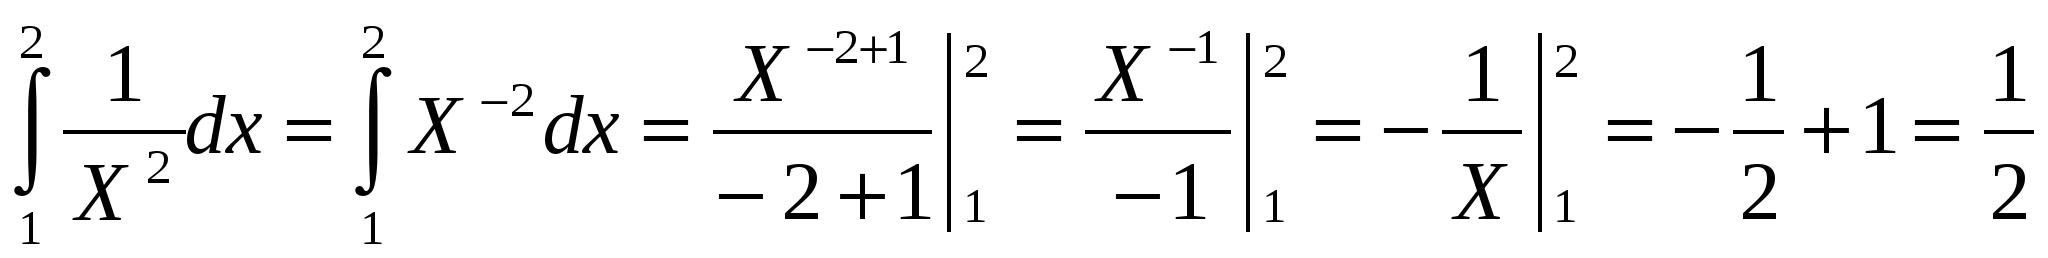 Вычисление площади криволинейной трапеции методами приближенного вычисления в среде MS Excel и методом определенного интеграла.